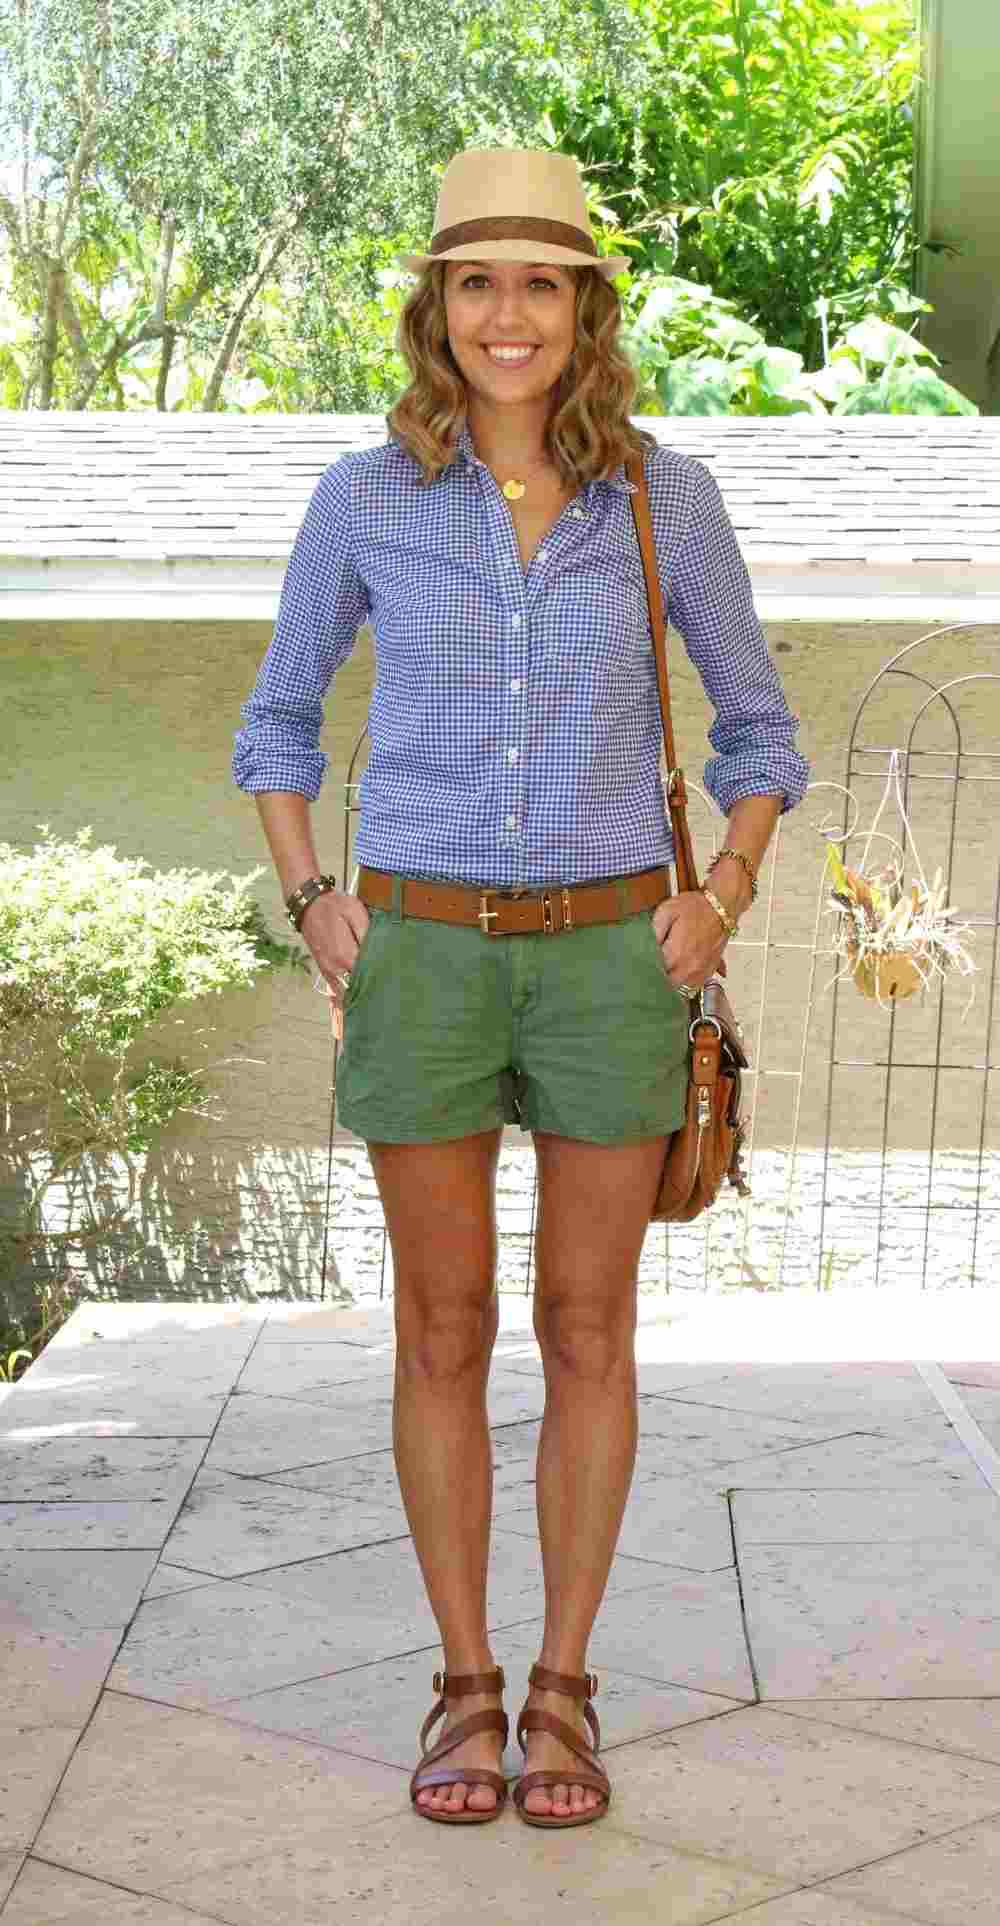 Grüne Shorts und blau kariertes Hemd mit Sandalen und Hut